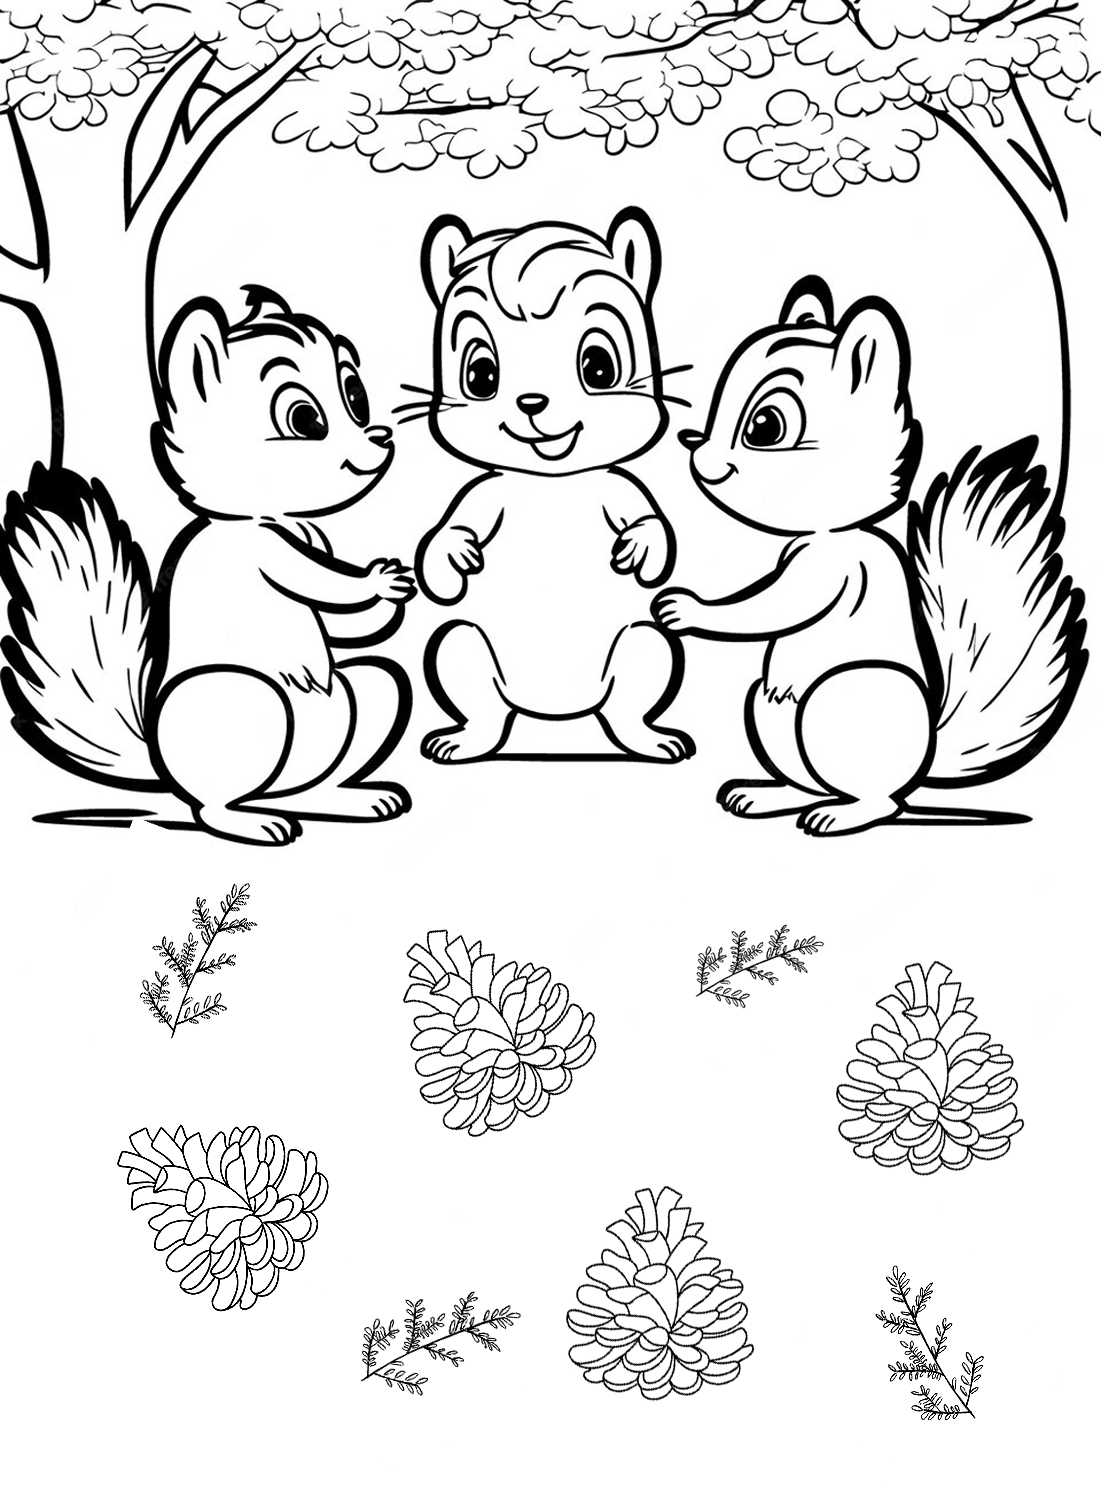 Immagine da colorare di scoiattolo di Scoiattolo